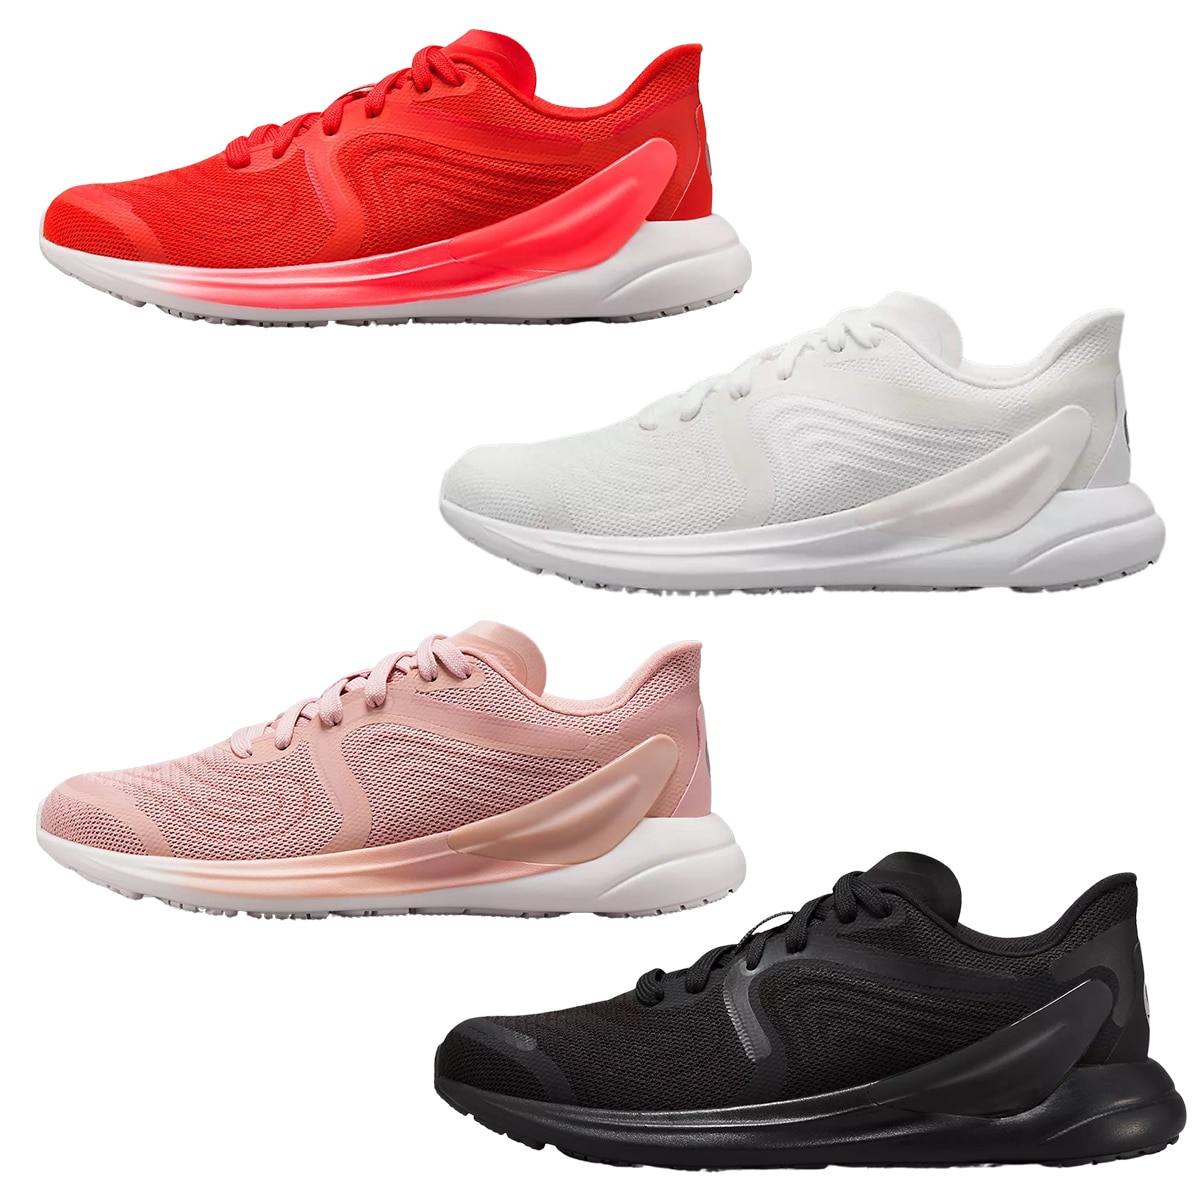 Lululemon announces the release of its new Blissfeel 2 women's running shoe  